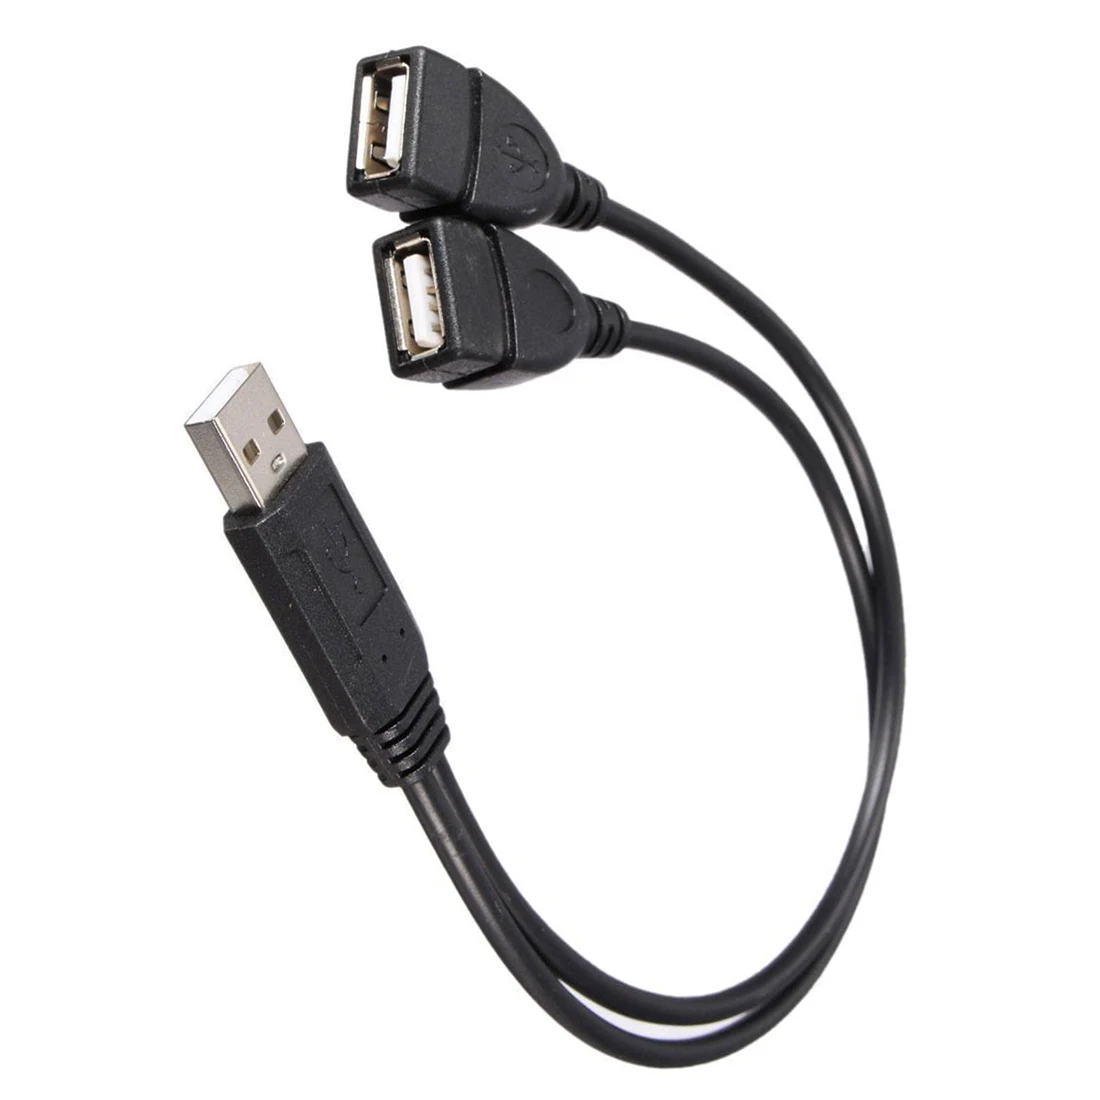 USB 2,0 A папа-2 двойной USB гнездовой разъем Y разветвитель концентратор Шнур питания Кабель-адаптер